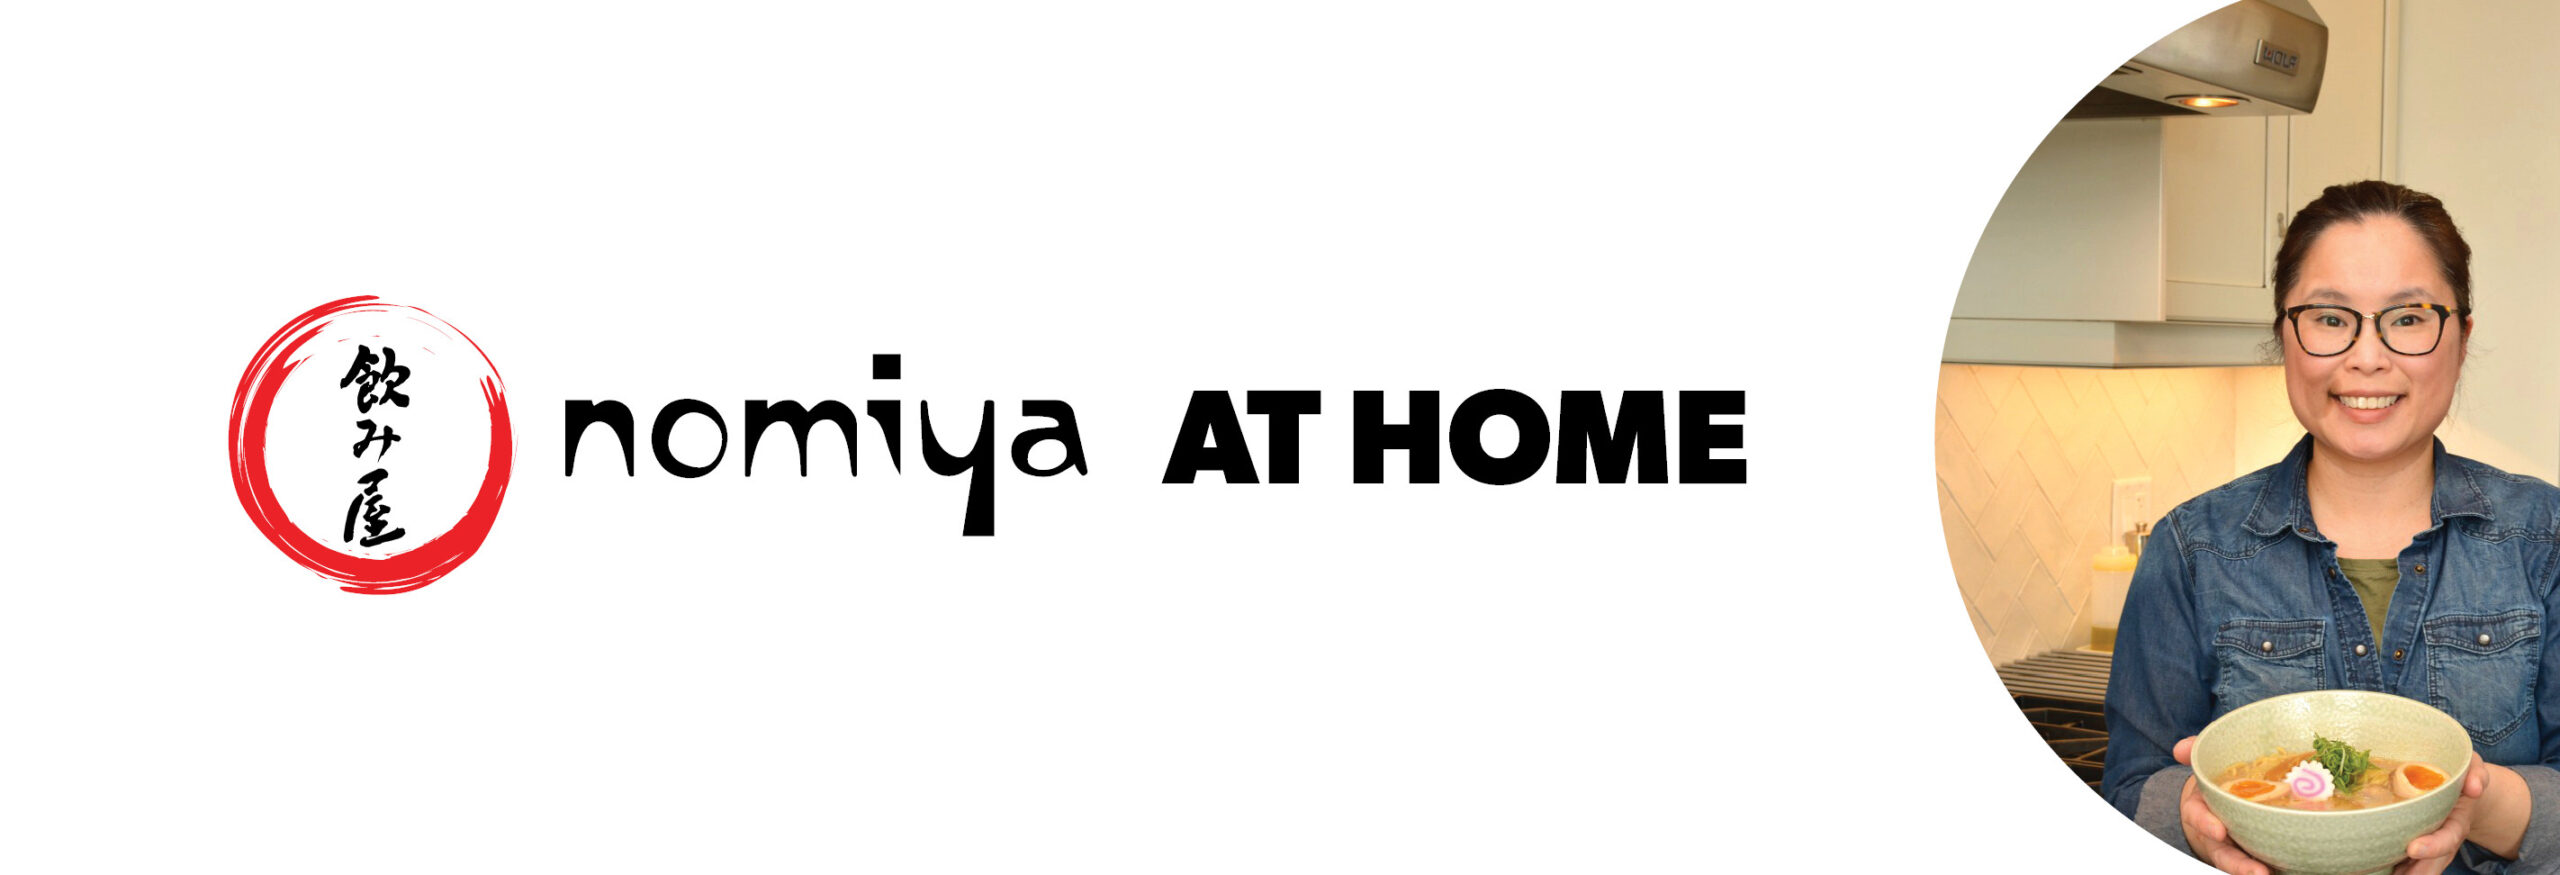 nomiya at home